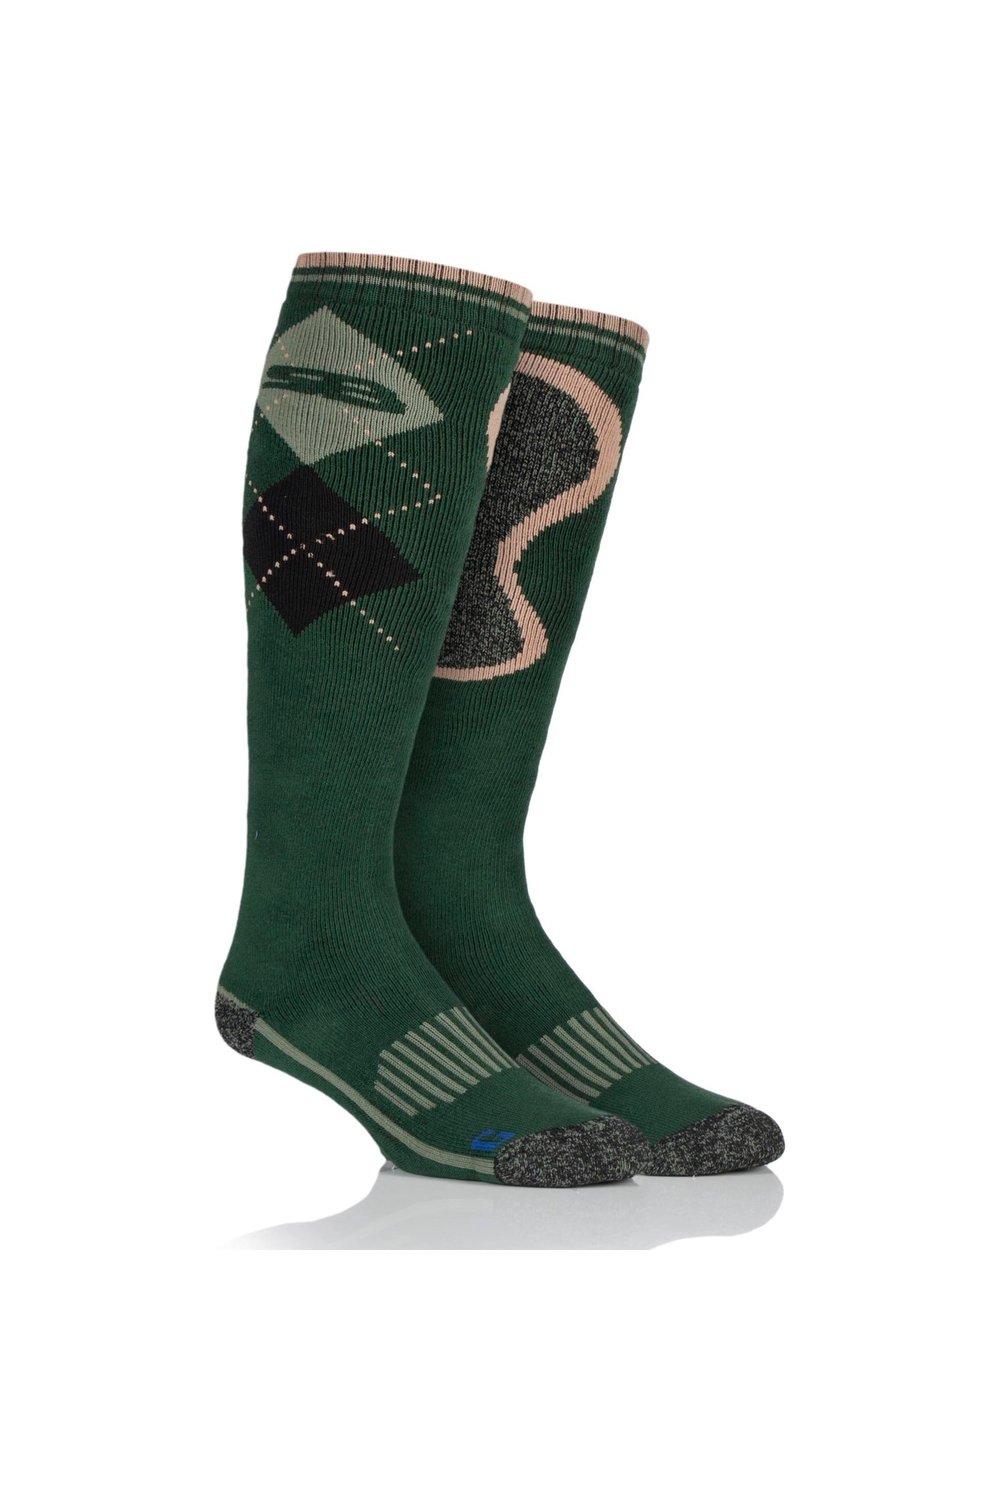 1 пара длинных хлопковых носков BlueGuard Country SOCKSHOP Storm Bloc, зеленый